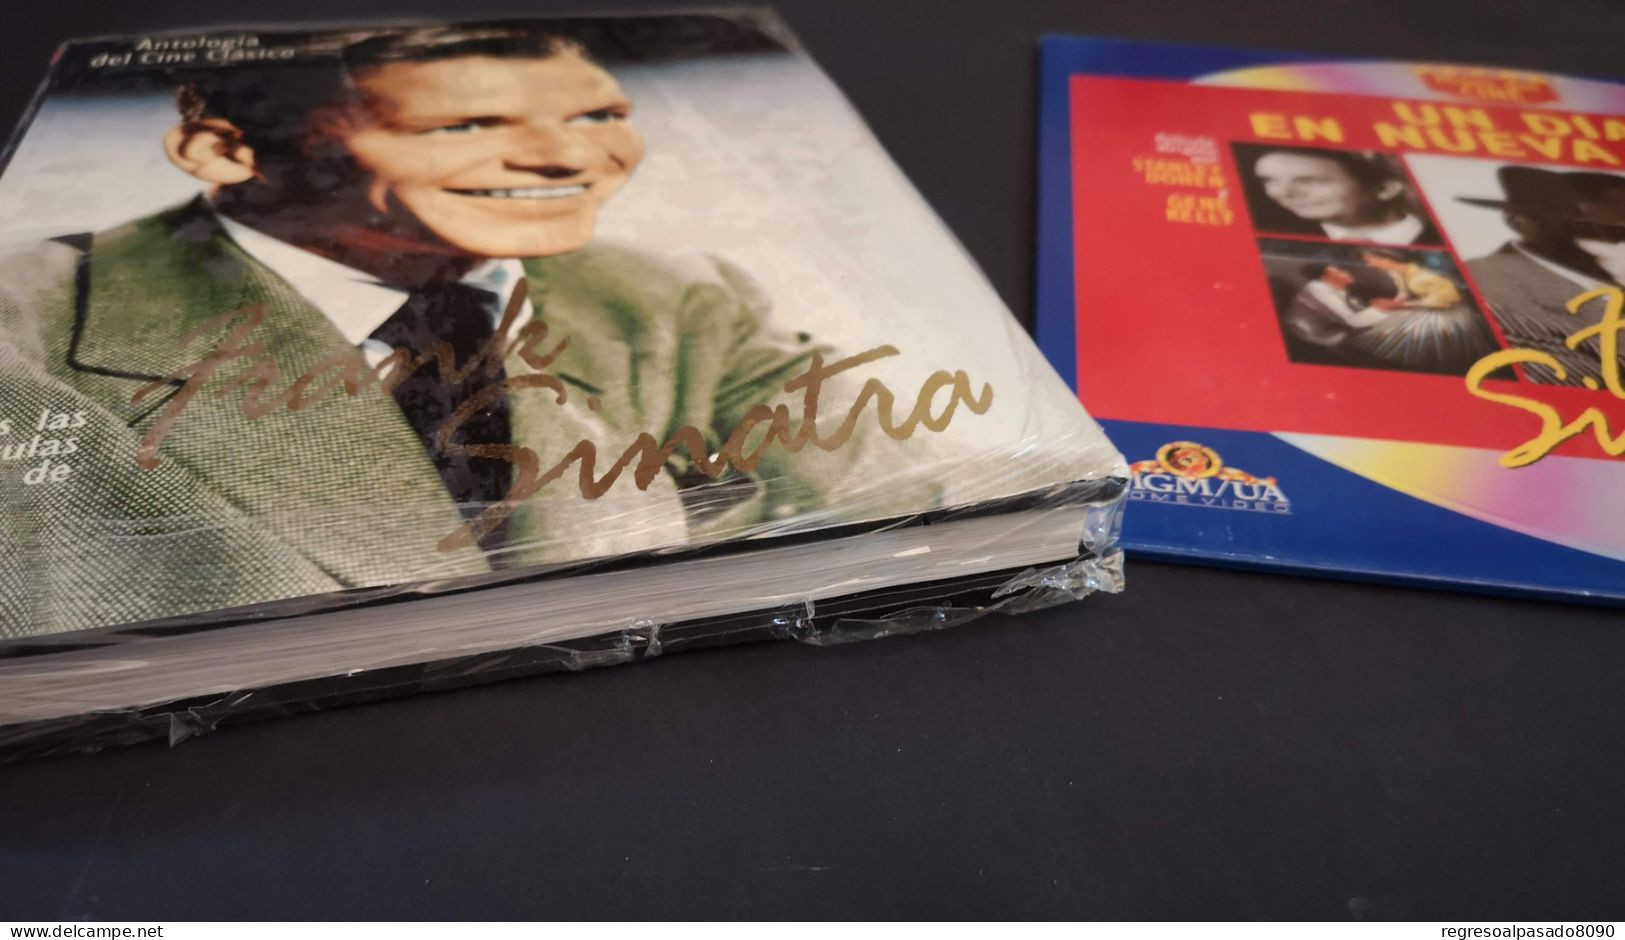 Frank Sinatra Libro Y Película Laser Disc Laserdisc Un Dia En Nueva York. Mitos Del Cine Planeta Años 90 - Klassiekers